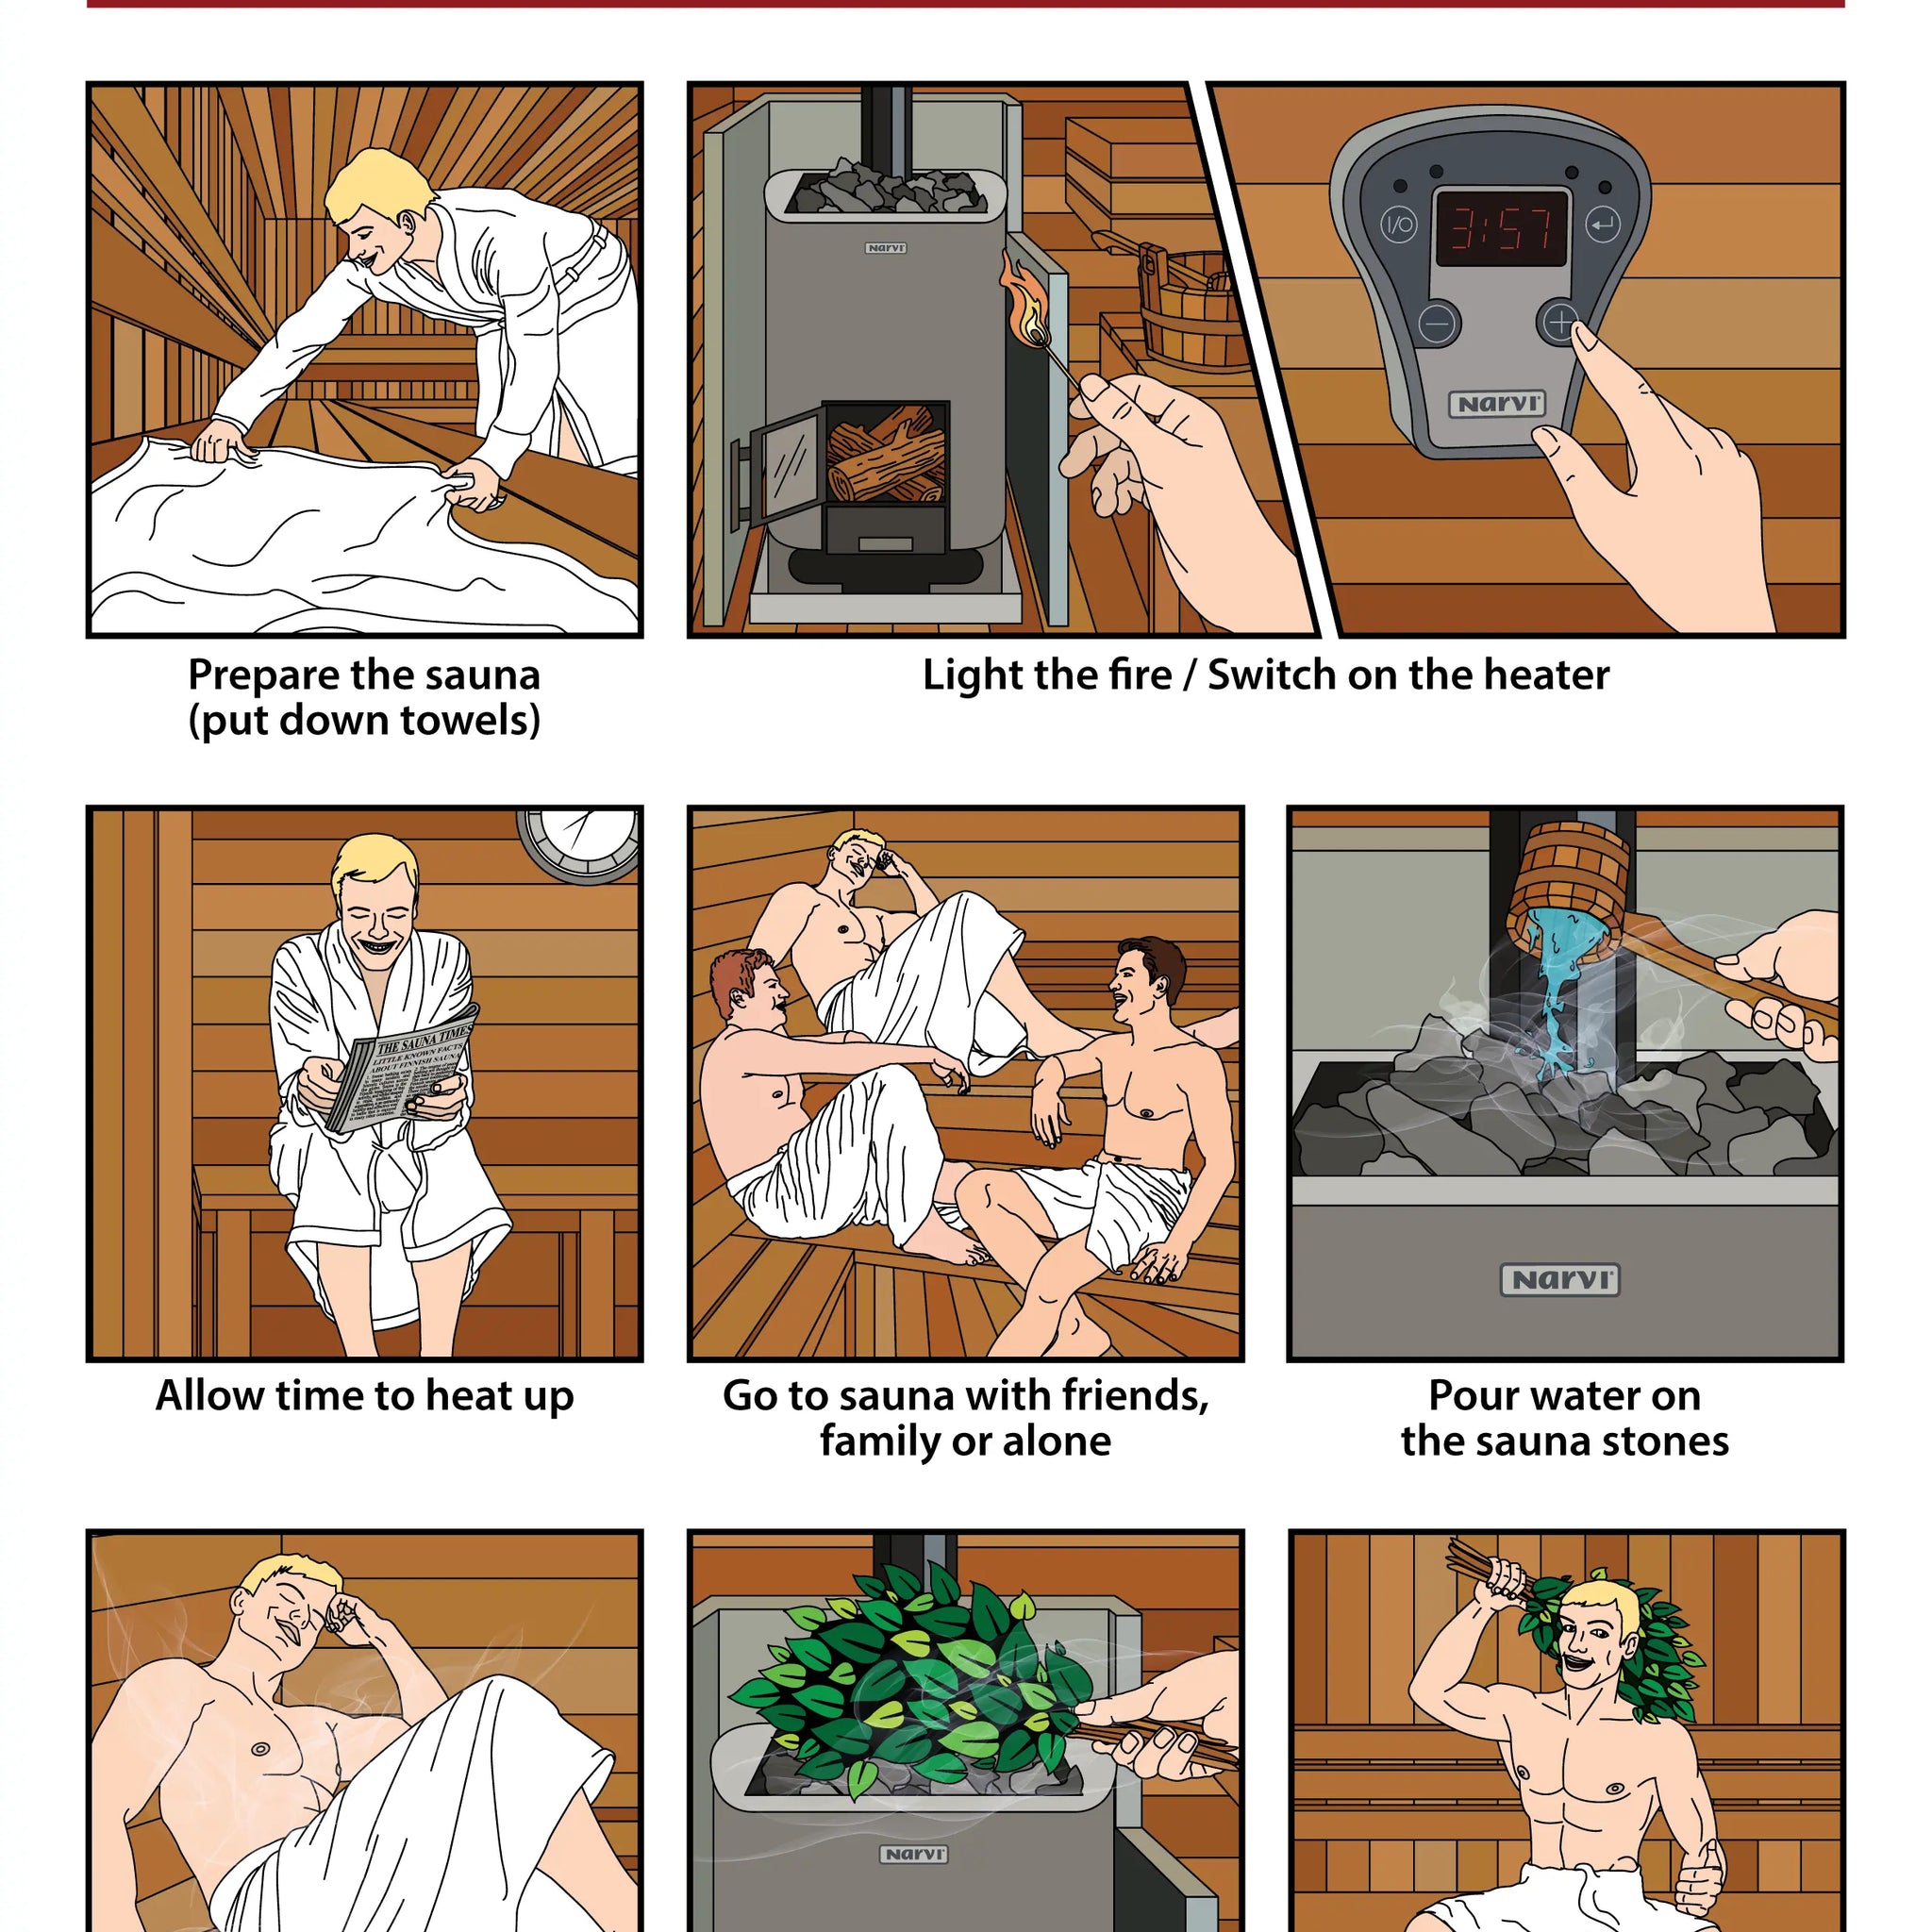 How to Sauna (properly!)... by Finnmark Sauna | Finnmark Sauna 